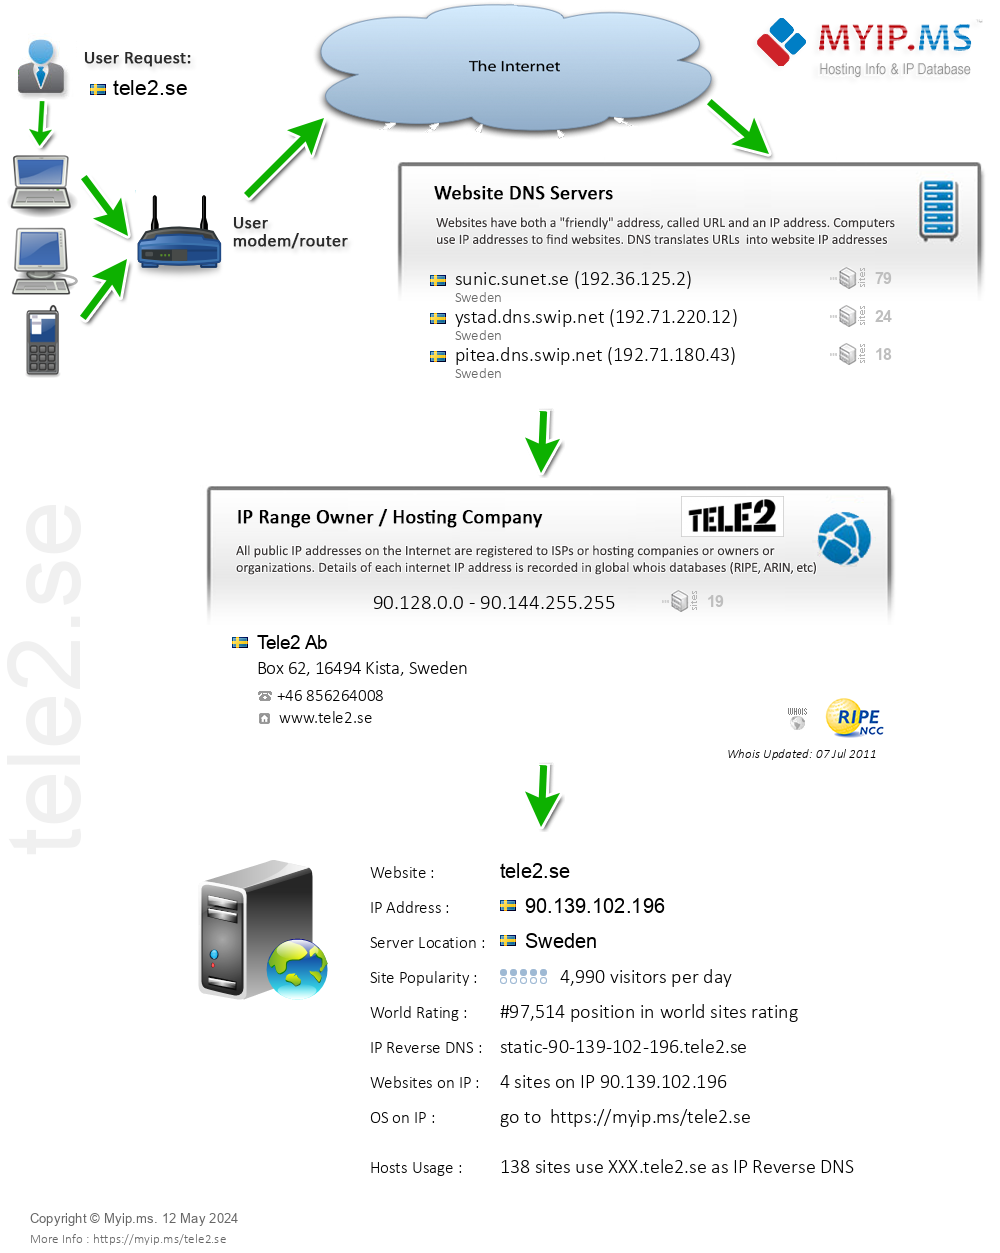 Tele2.se - Website Hosting Visual IP Diagram